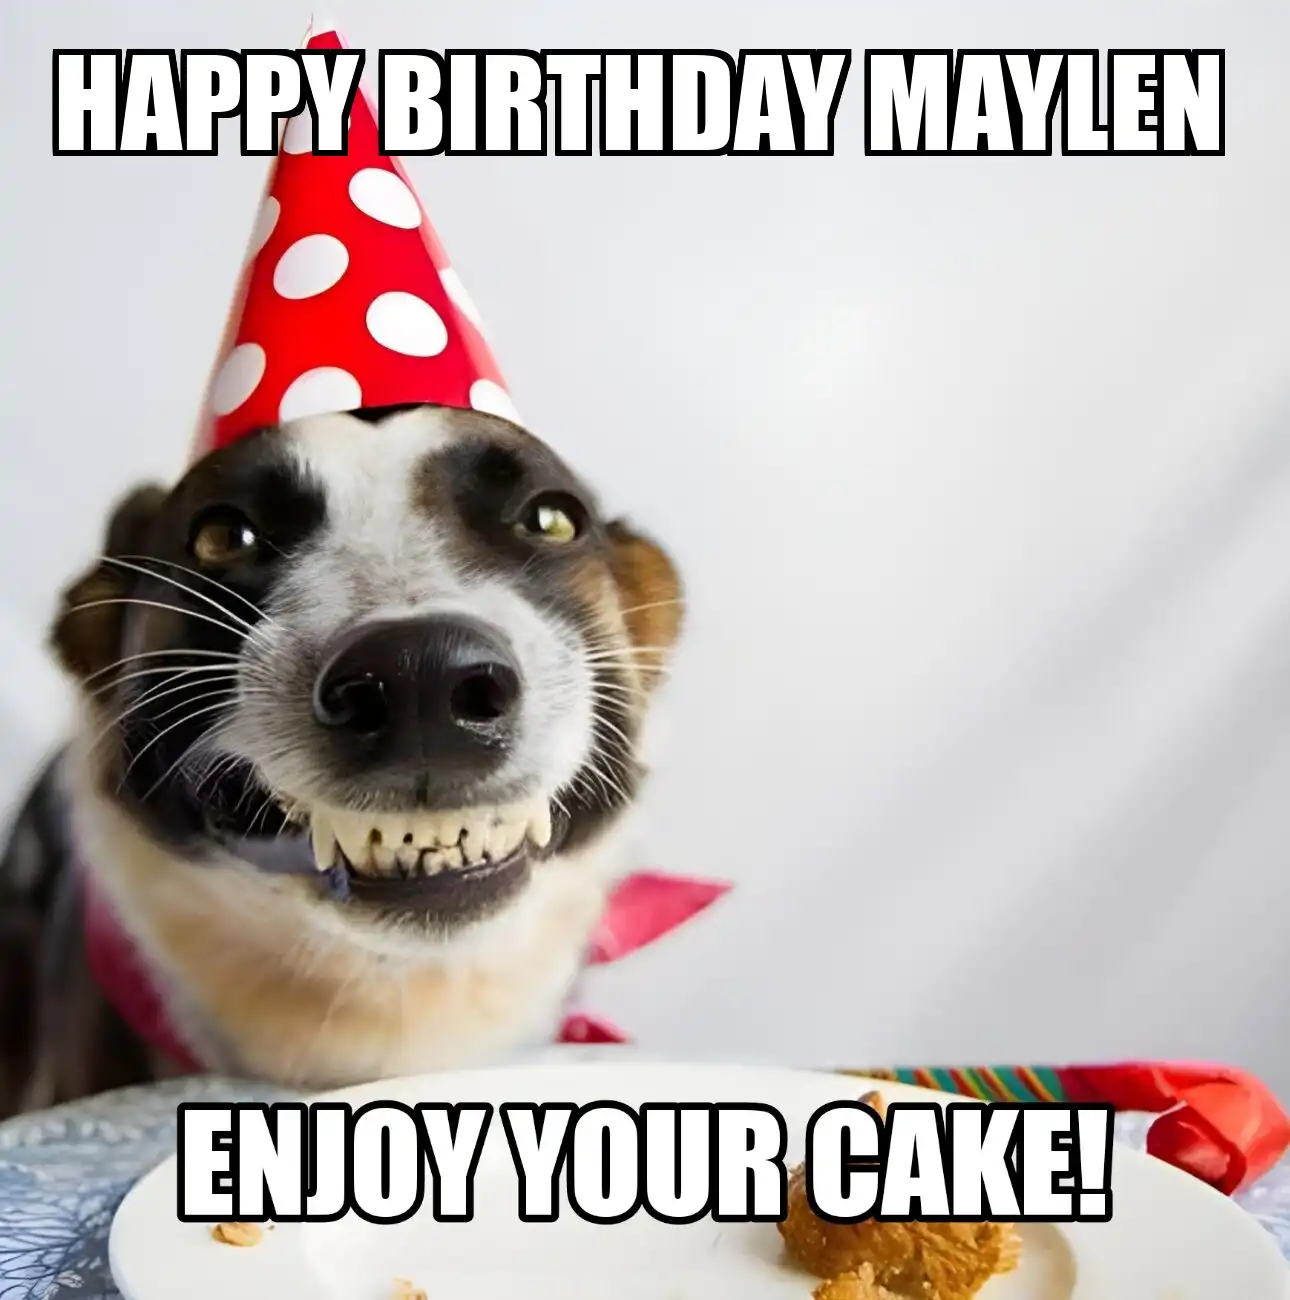 Happy Birthday Maylen Enjoy Your Cake Dog Meme